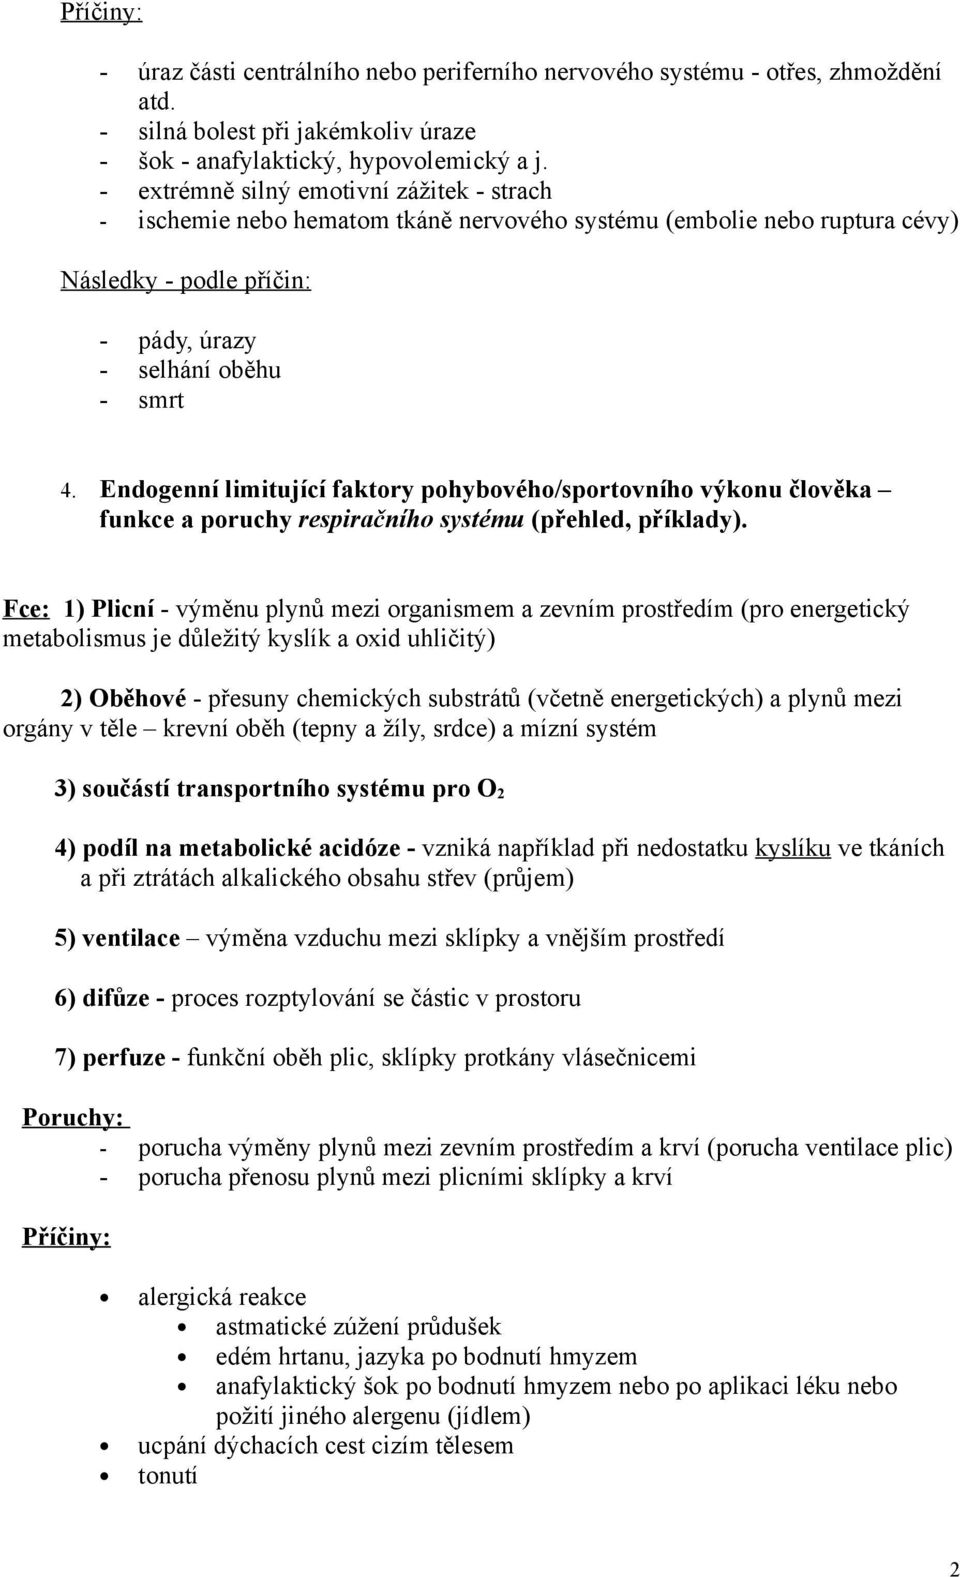 Endogenní limitující faktory pohybového/sportovního výkonu člověka funkce a poruchy respiračního systému (přehled, příklady).